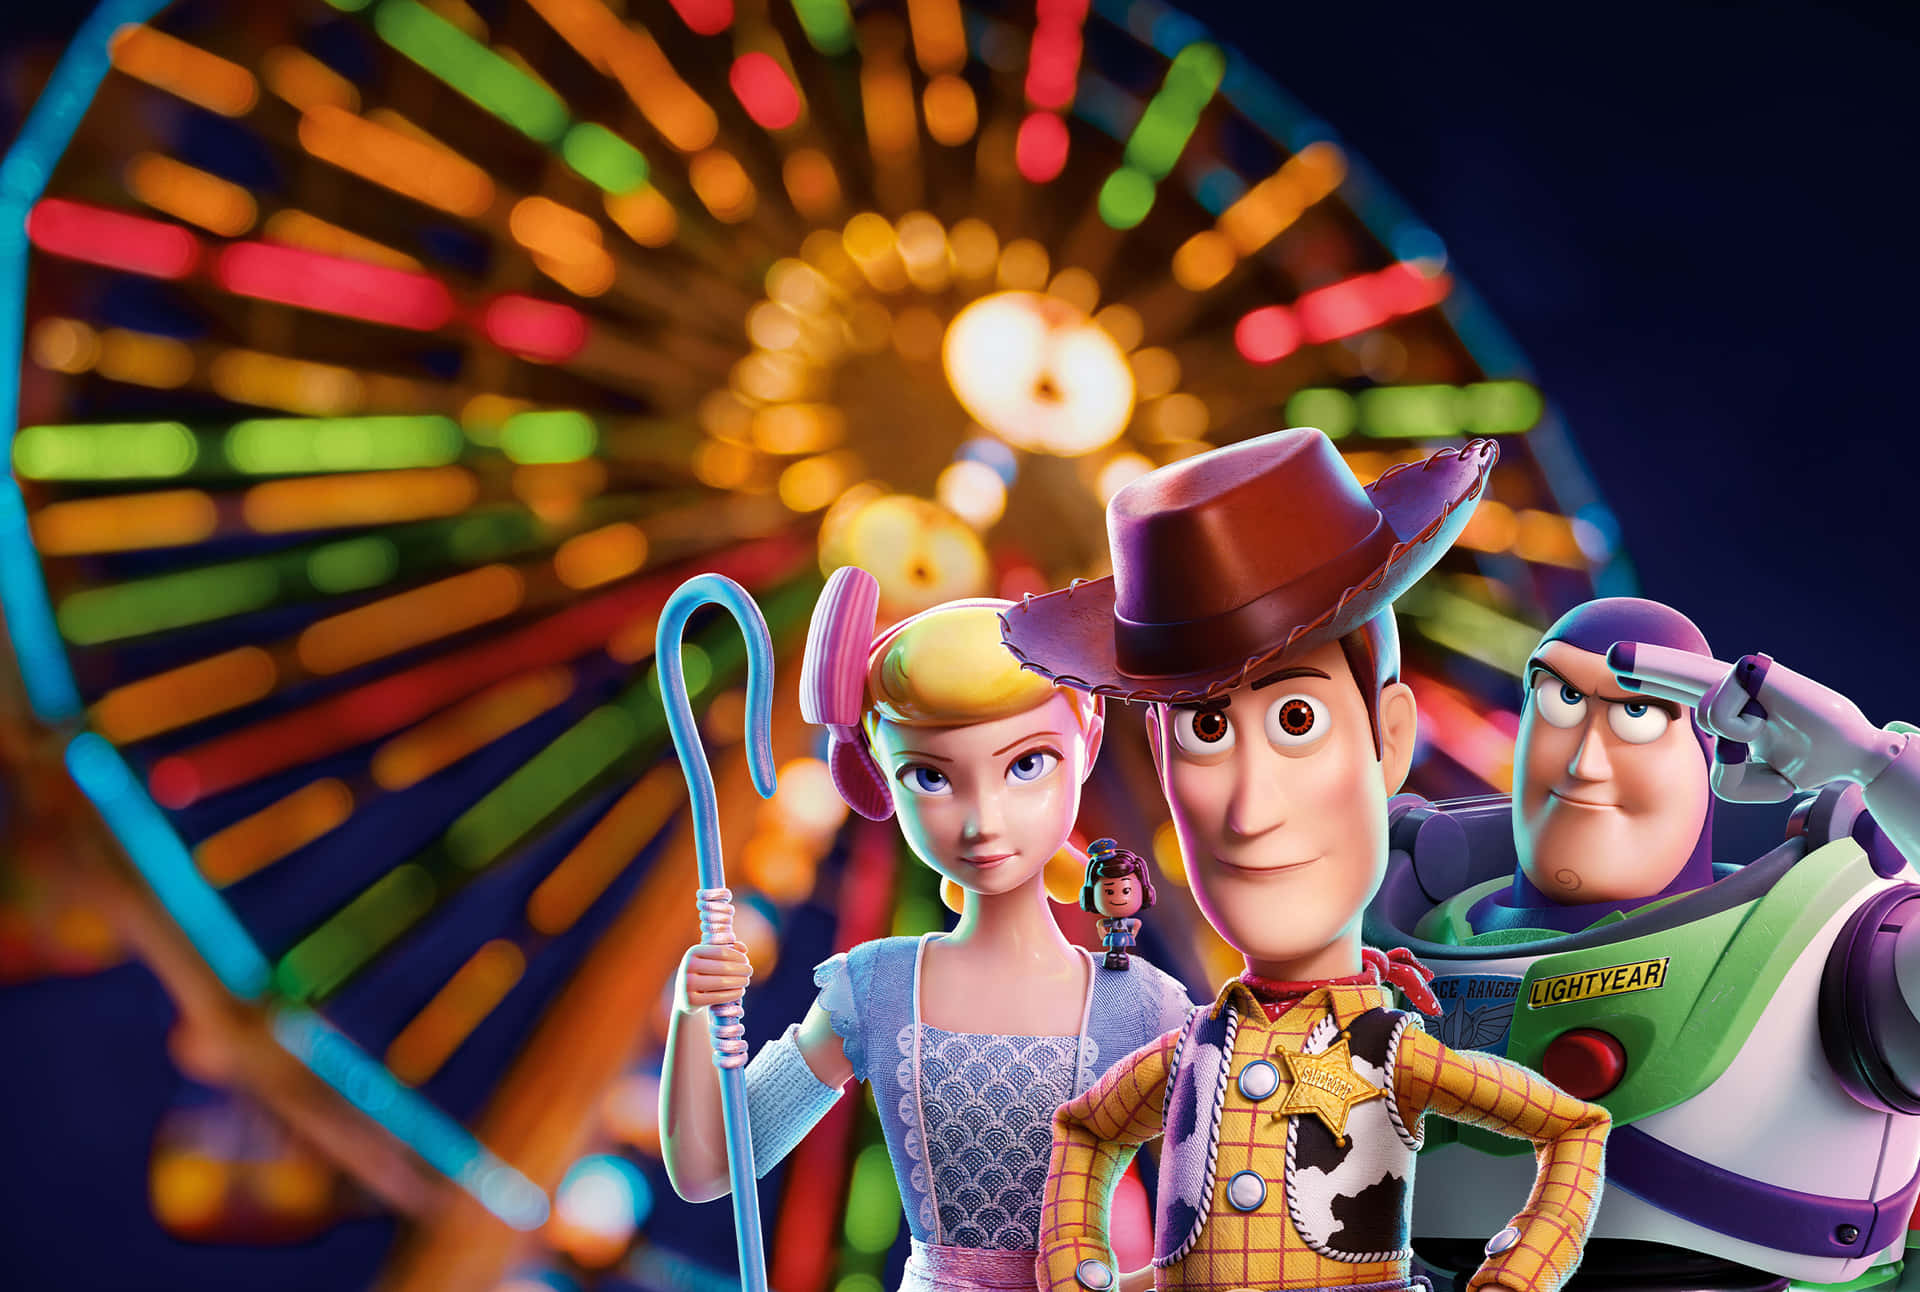 Venhase Juntar Ao Woody E Seus Amigos Em Uma Nova Aventura Em Toy Story 4.